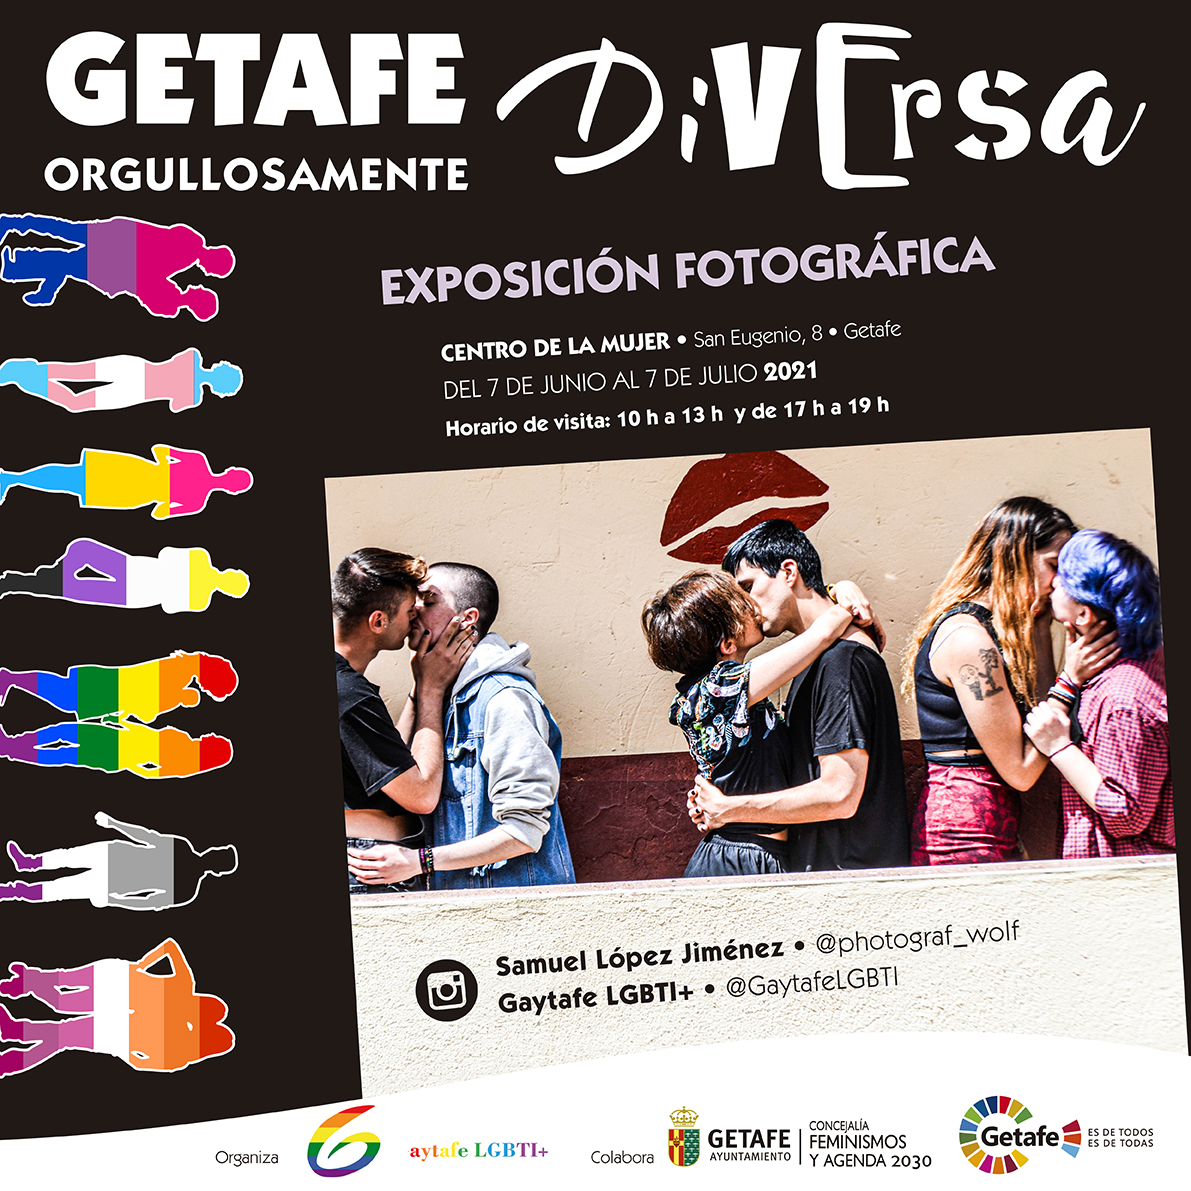 Exposición Fotográfica #GetafeOrgullosamenteDiversa